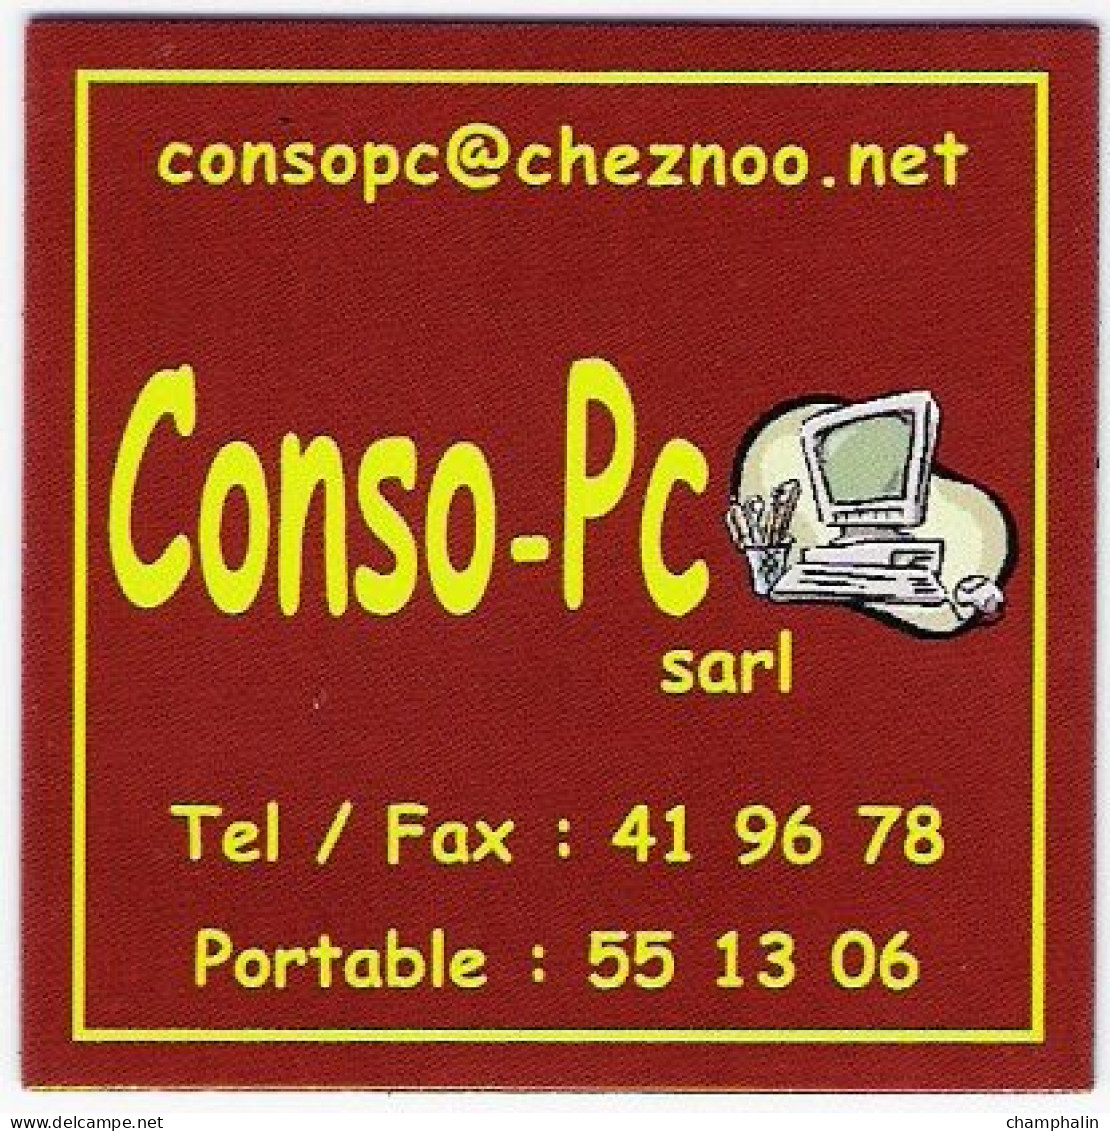 France - Magnet Publicitaire - Conso-Pc Sarl - Entreprise Informatique à Saint-Pierre-et-Miquelon (975) - Advertising